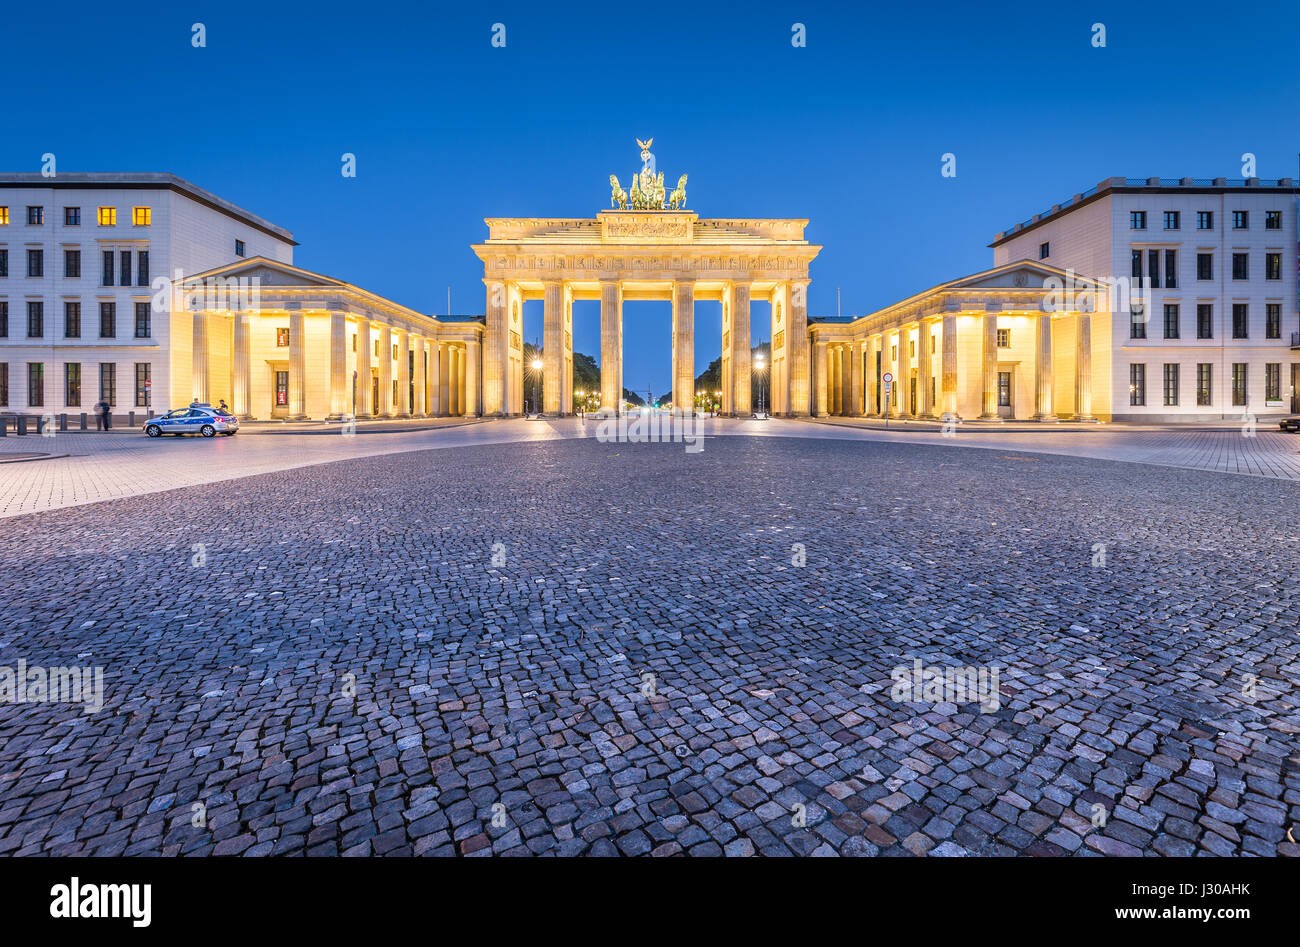 Historischen Brandenburger Tor, Deutschlands berühmteste Wahrzeichen und ein nationales Symbol, in post Sonnenuntergang Dämmerung während der blauen Stunde in der Abenddämmerung im Zentrum von Berlin Stockfoto